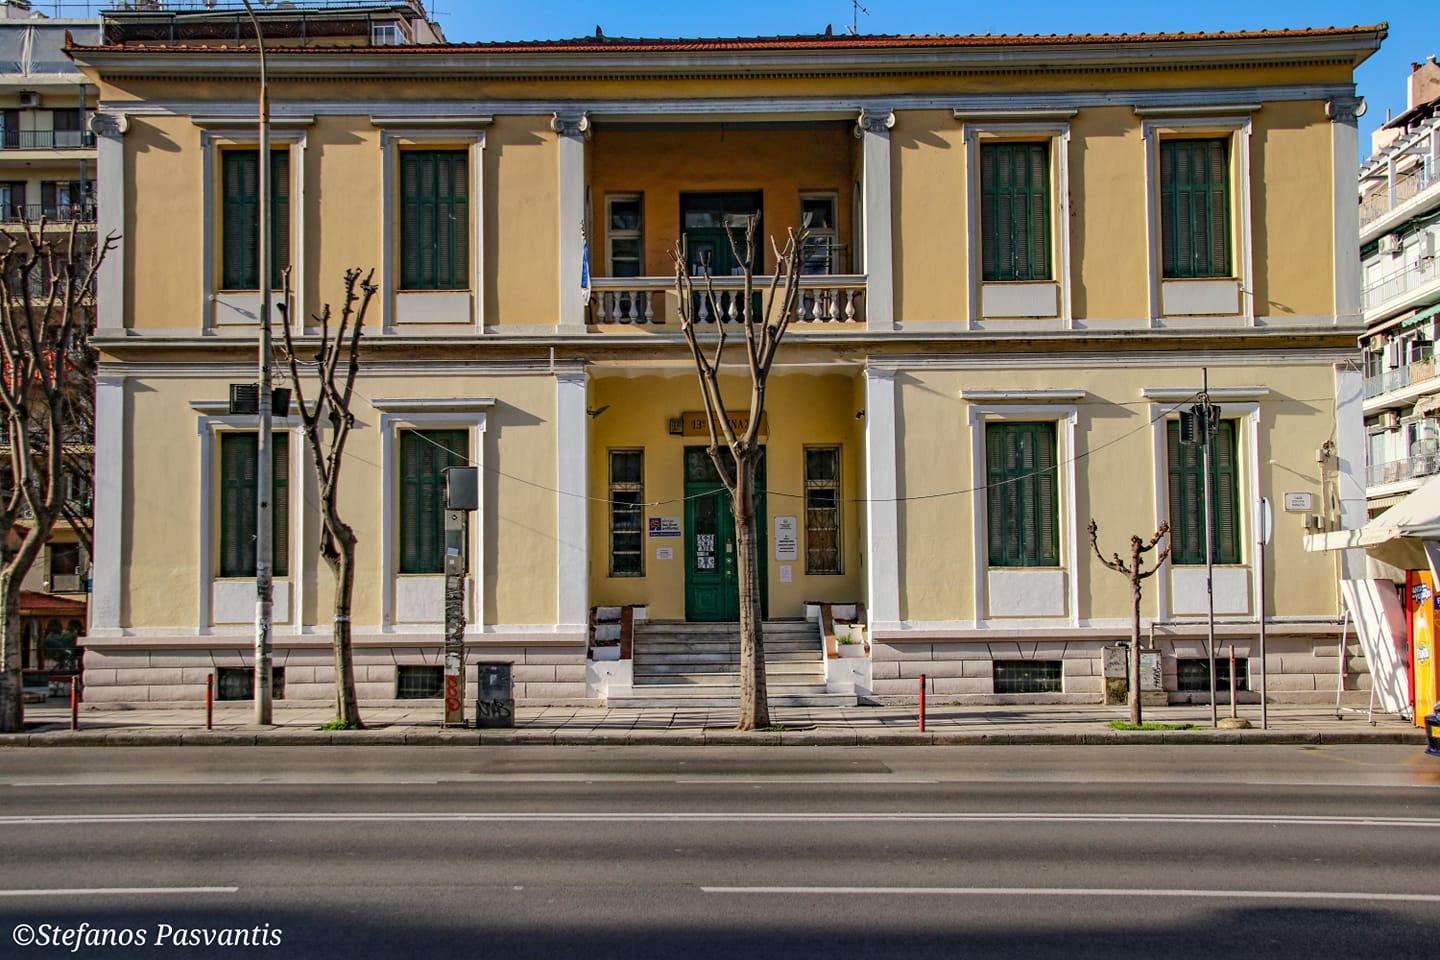 Ερνέστος Τσίλλερ, ο αρχιτέκτονας που άλλαξε την Ελλάδα και τα έργα του στη Θεσσαλονίκη